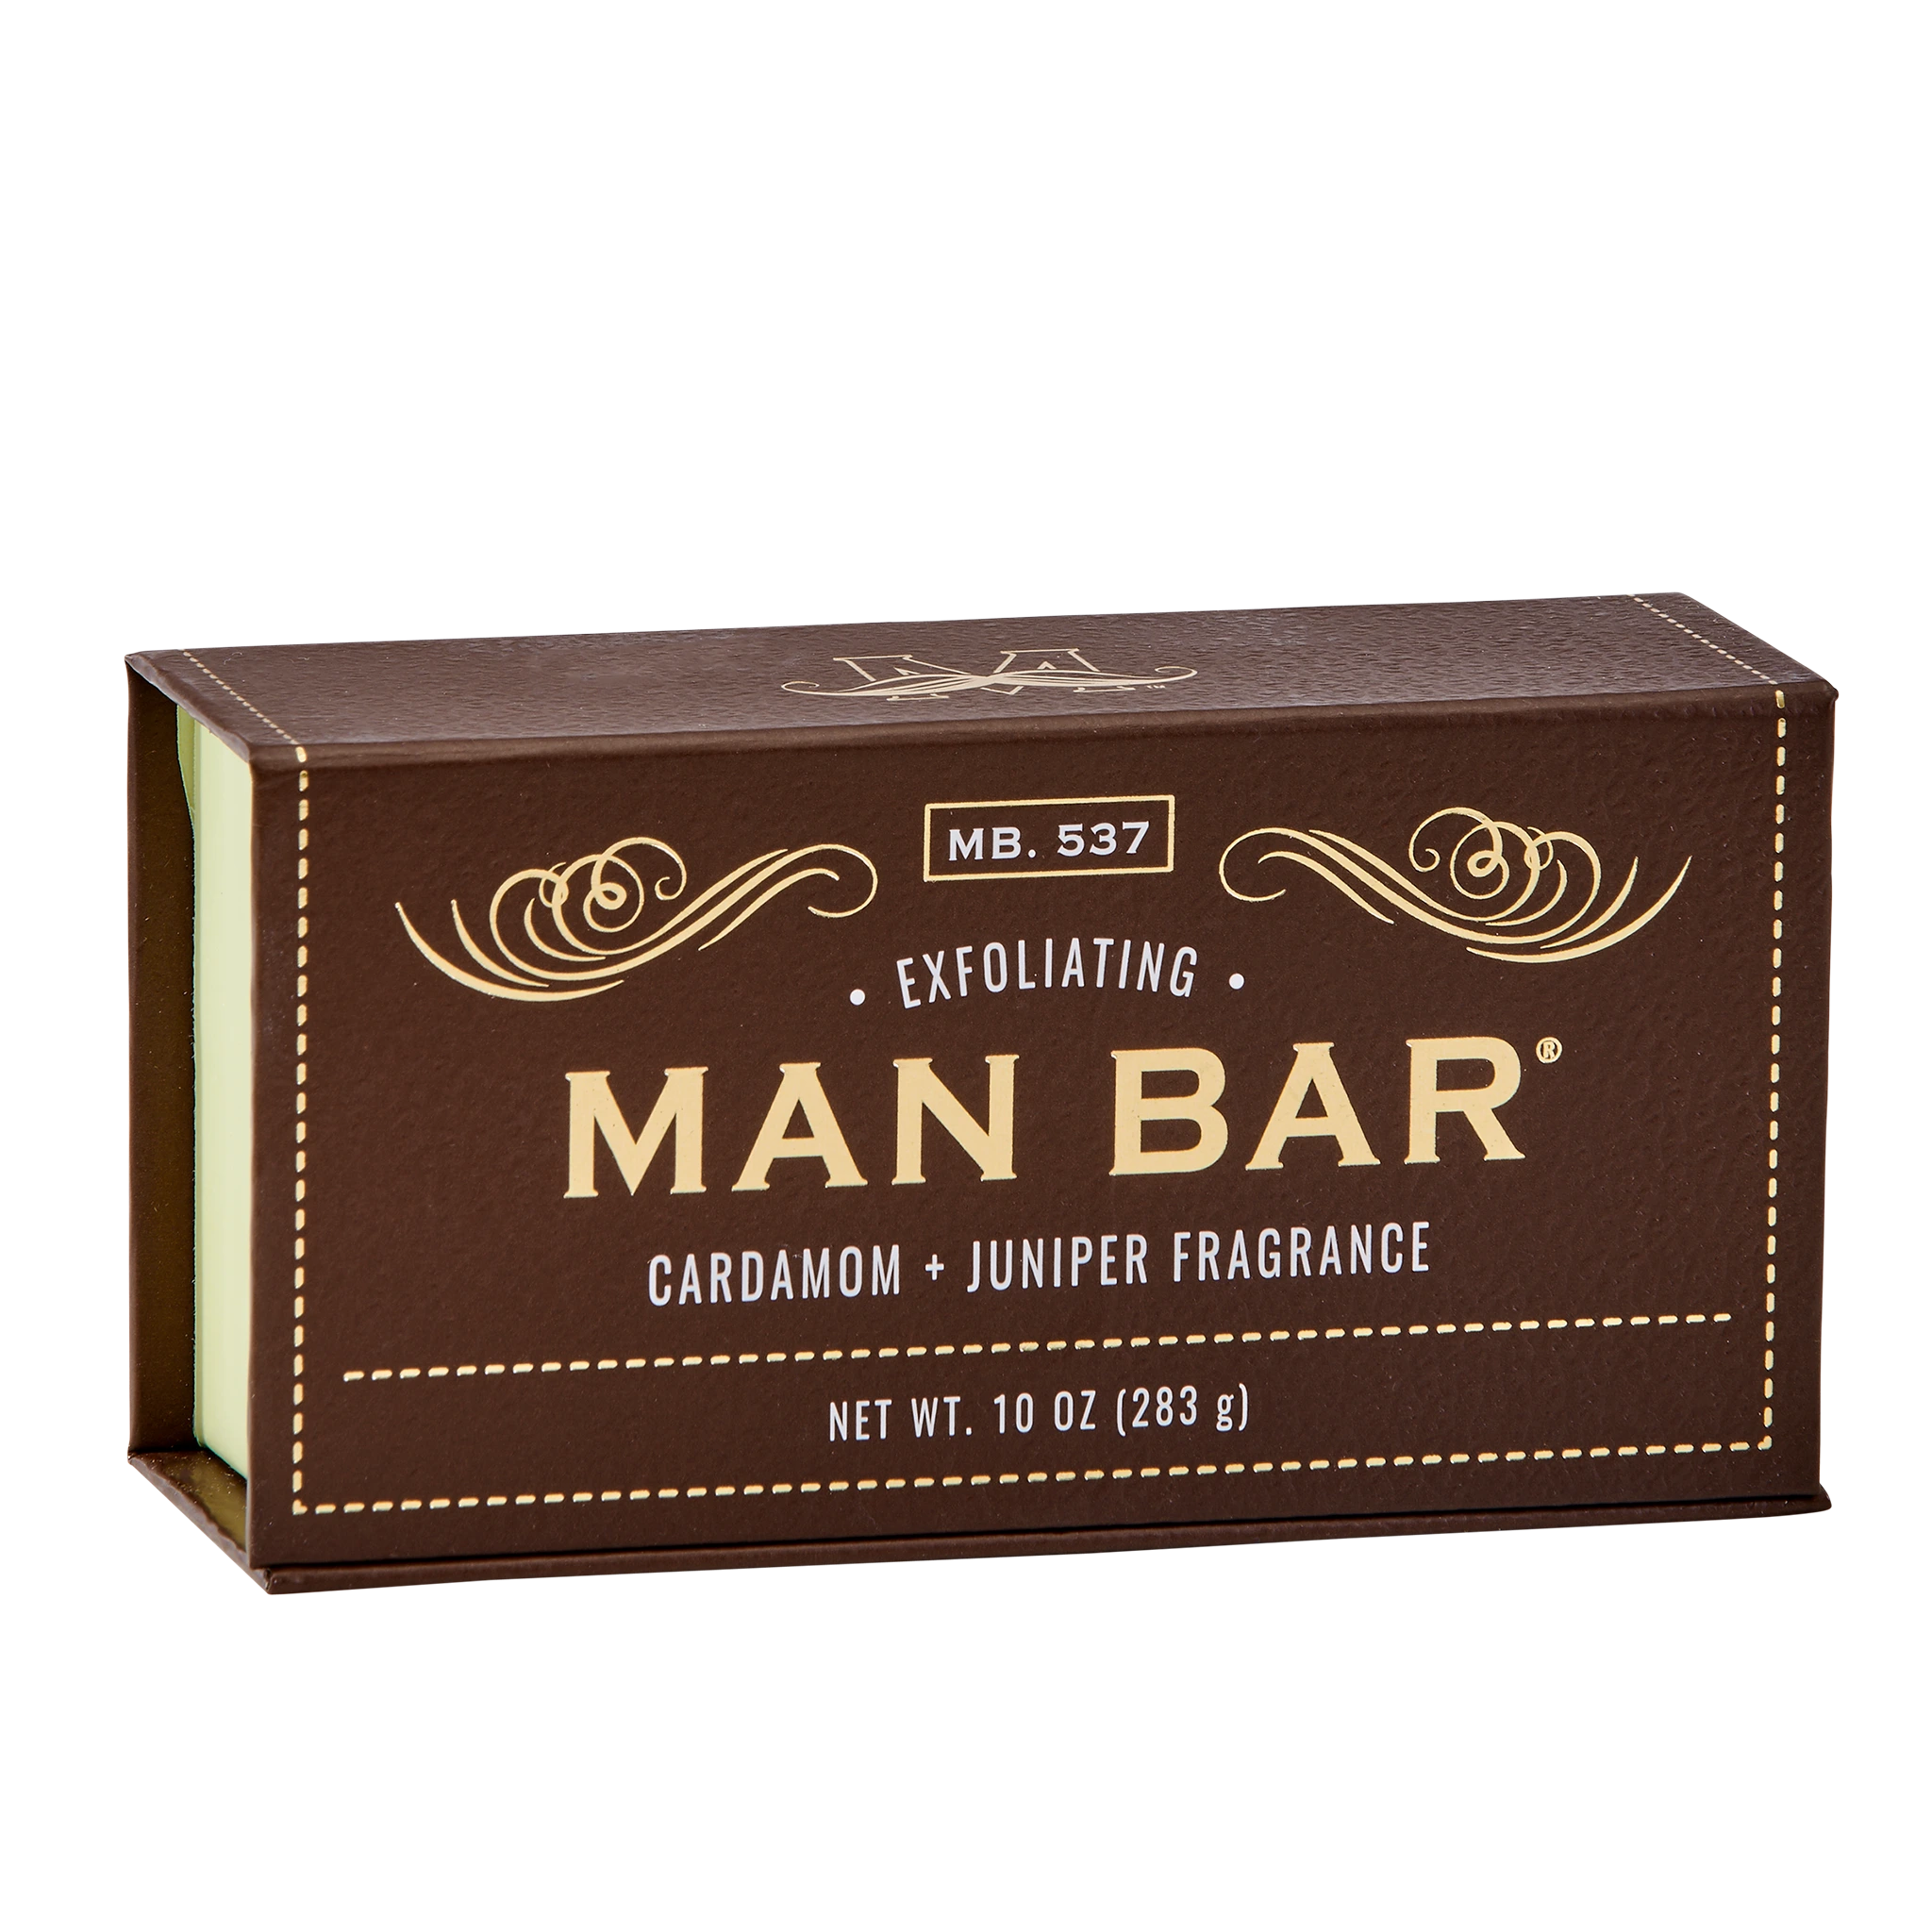 Man Bar Exfoliating Cardamom & Juniper soap box